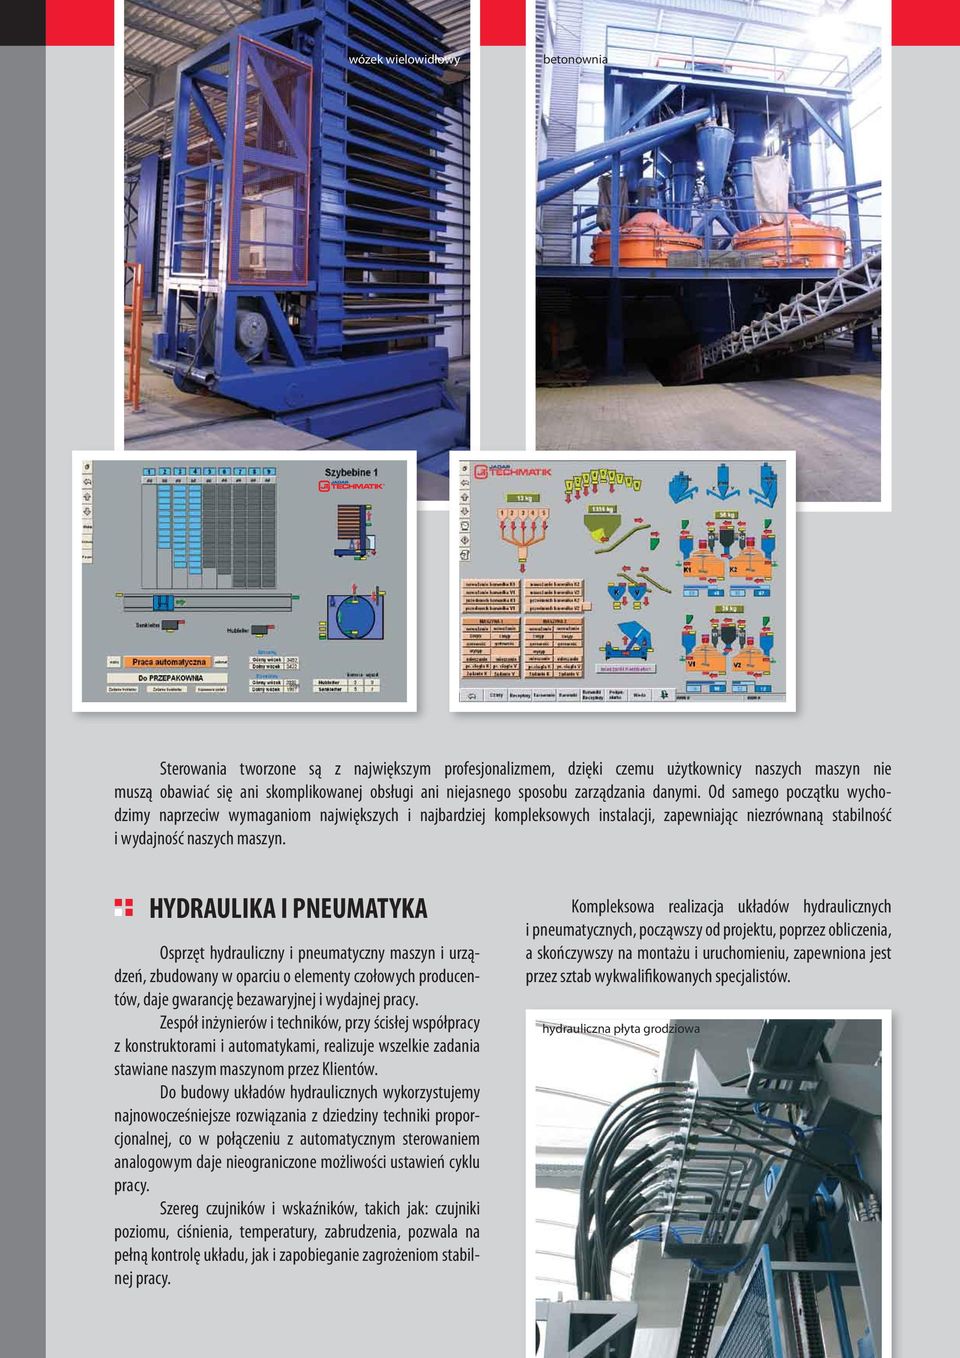 HYDRAULIKA I PNEUMATYKA Osprzęt hydrauliczny i pneumatyczny maszyn i urządzeń, zbudowany w oparciu o elementy czołowych producentów, daje gwarancję bezawaryjnej i wydajnej pracy.